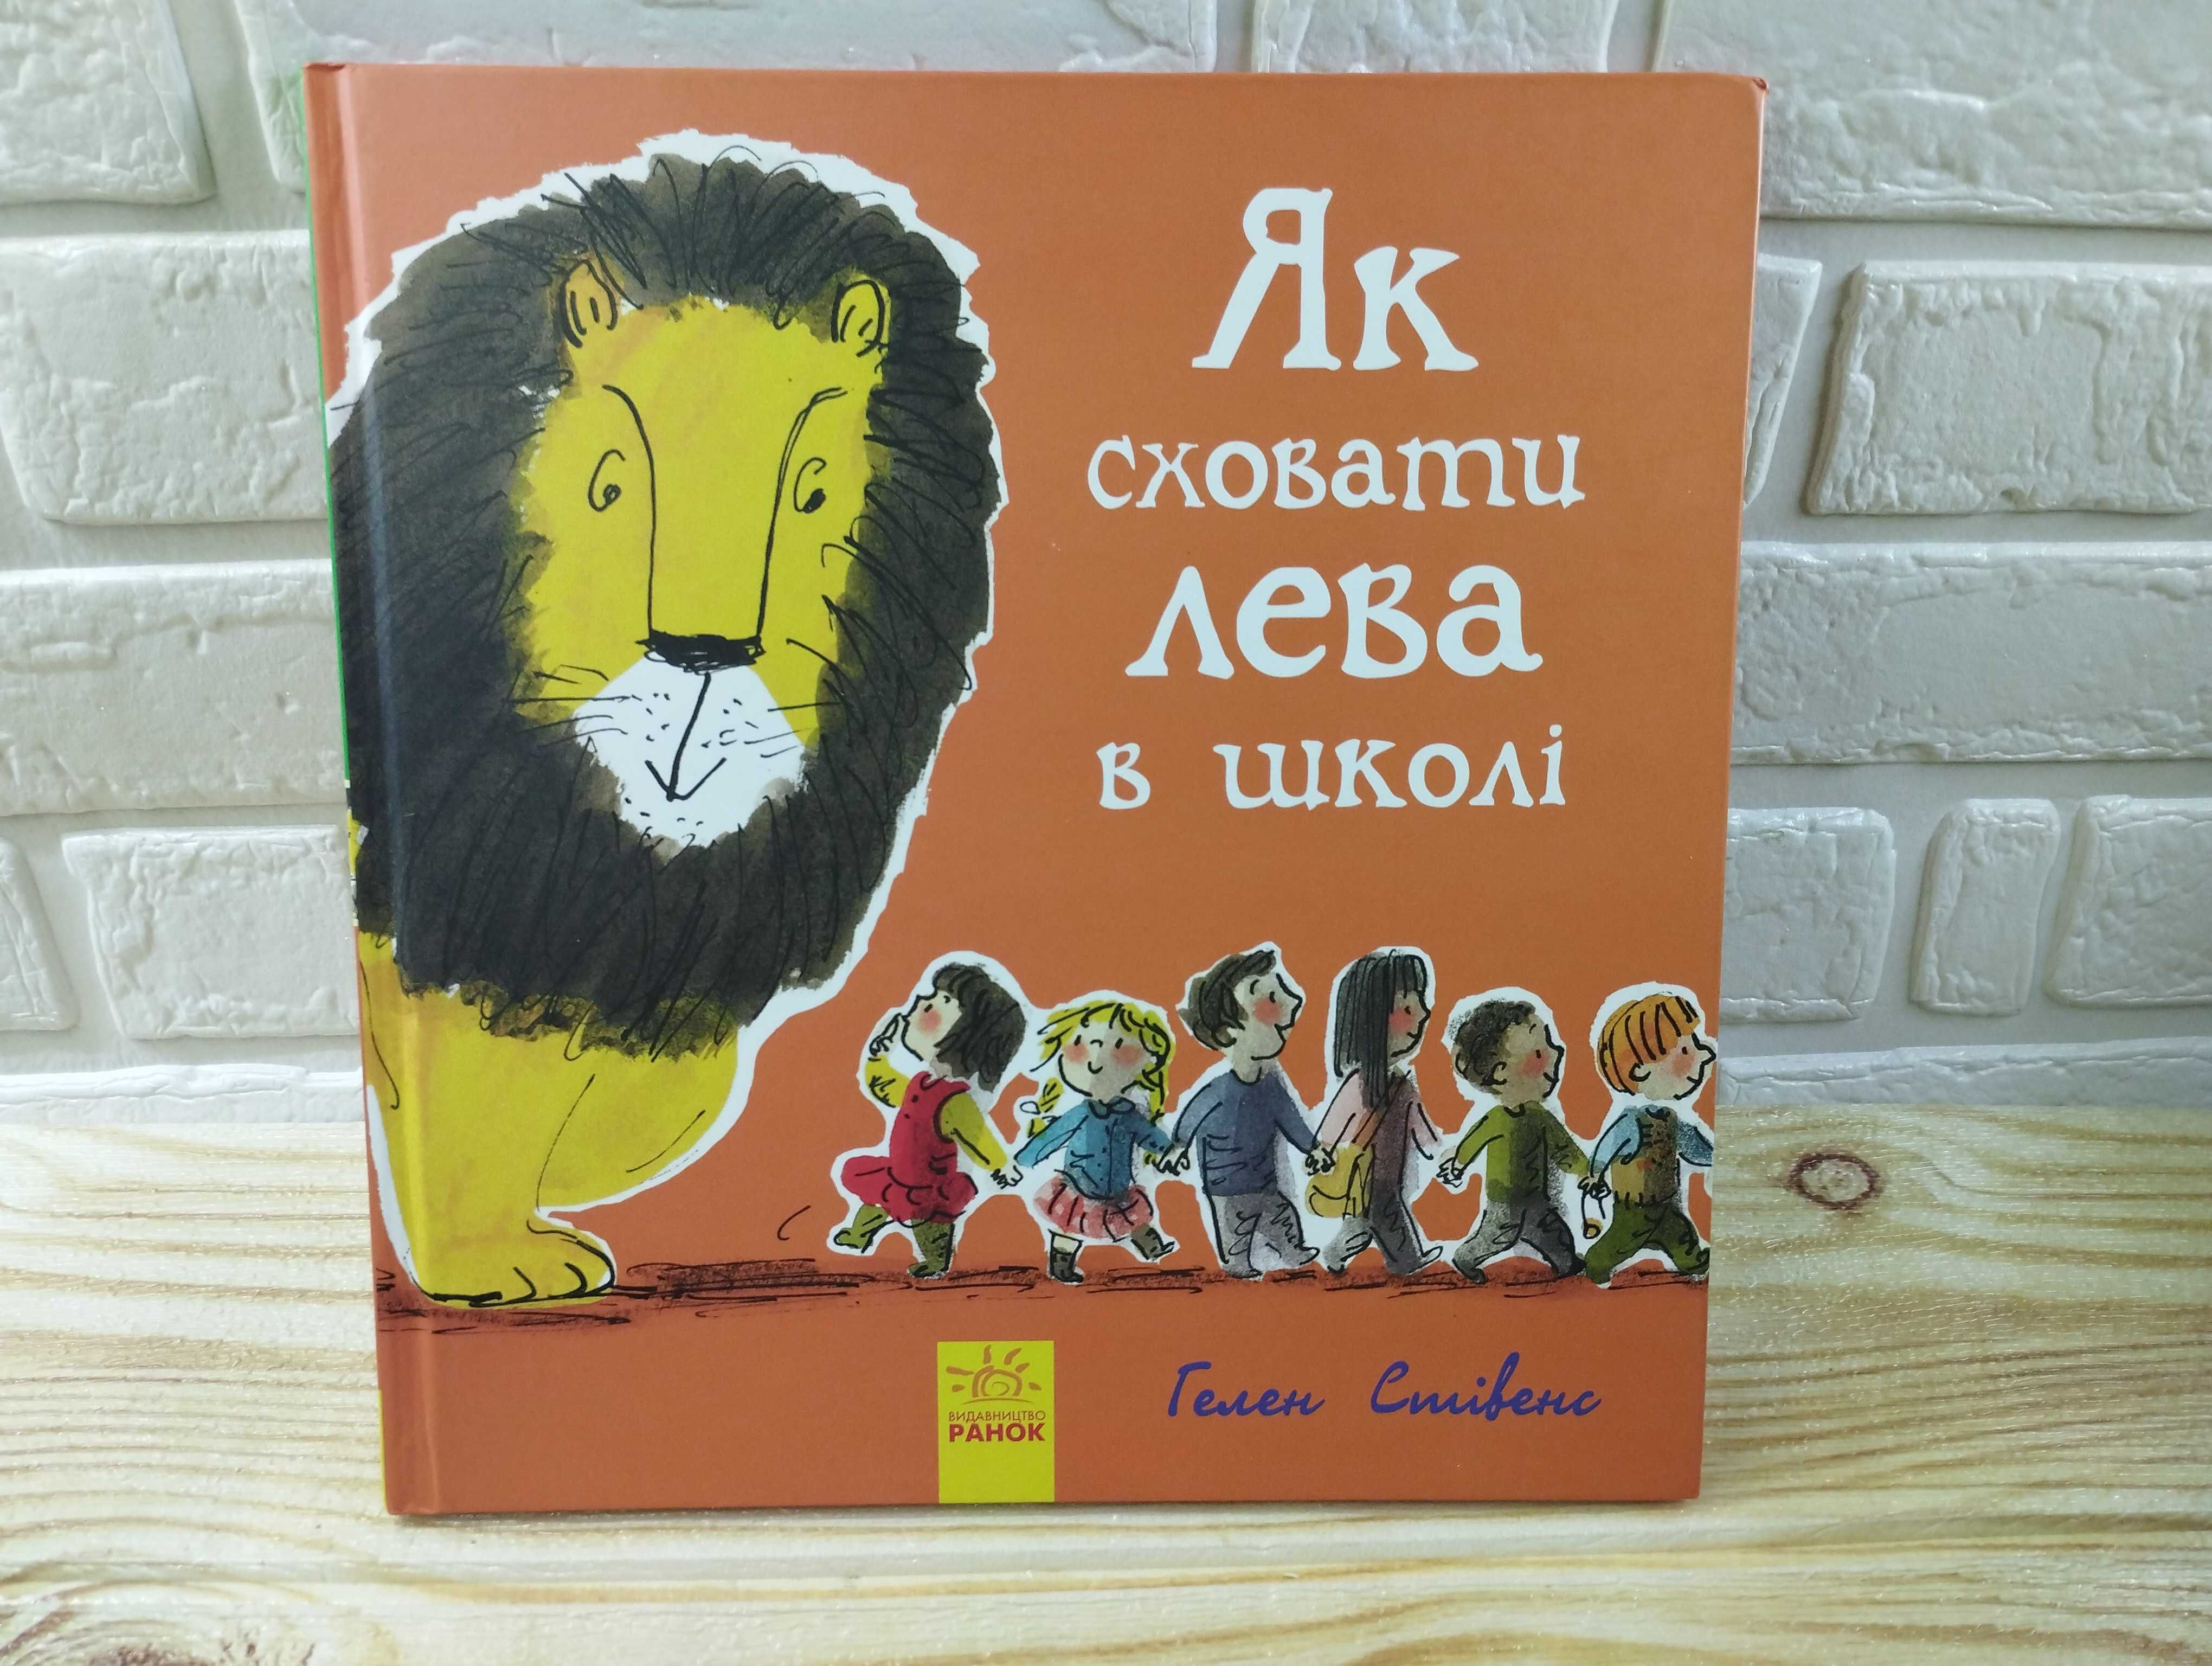 Книги Гелен Стівенс серія "Як сховати лева"